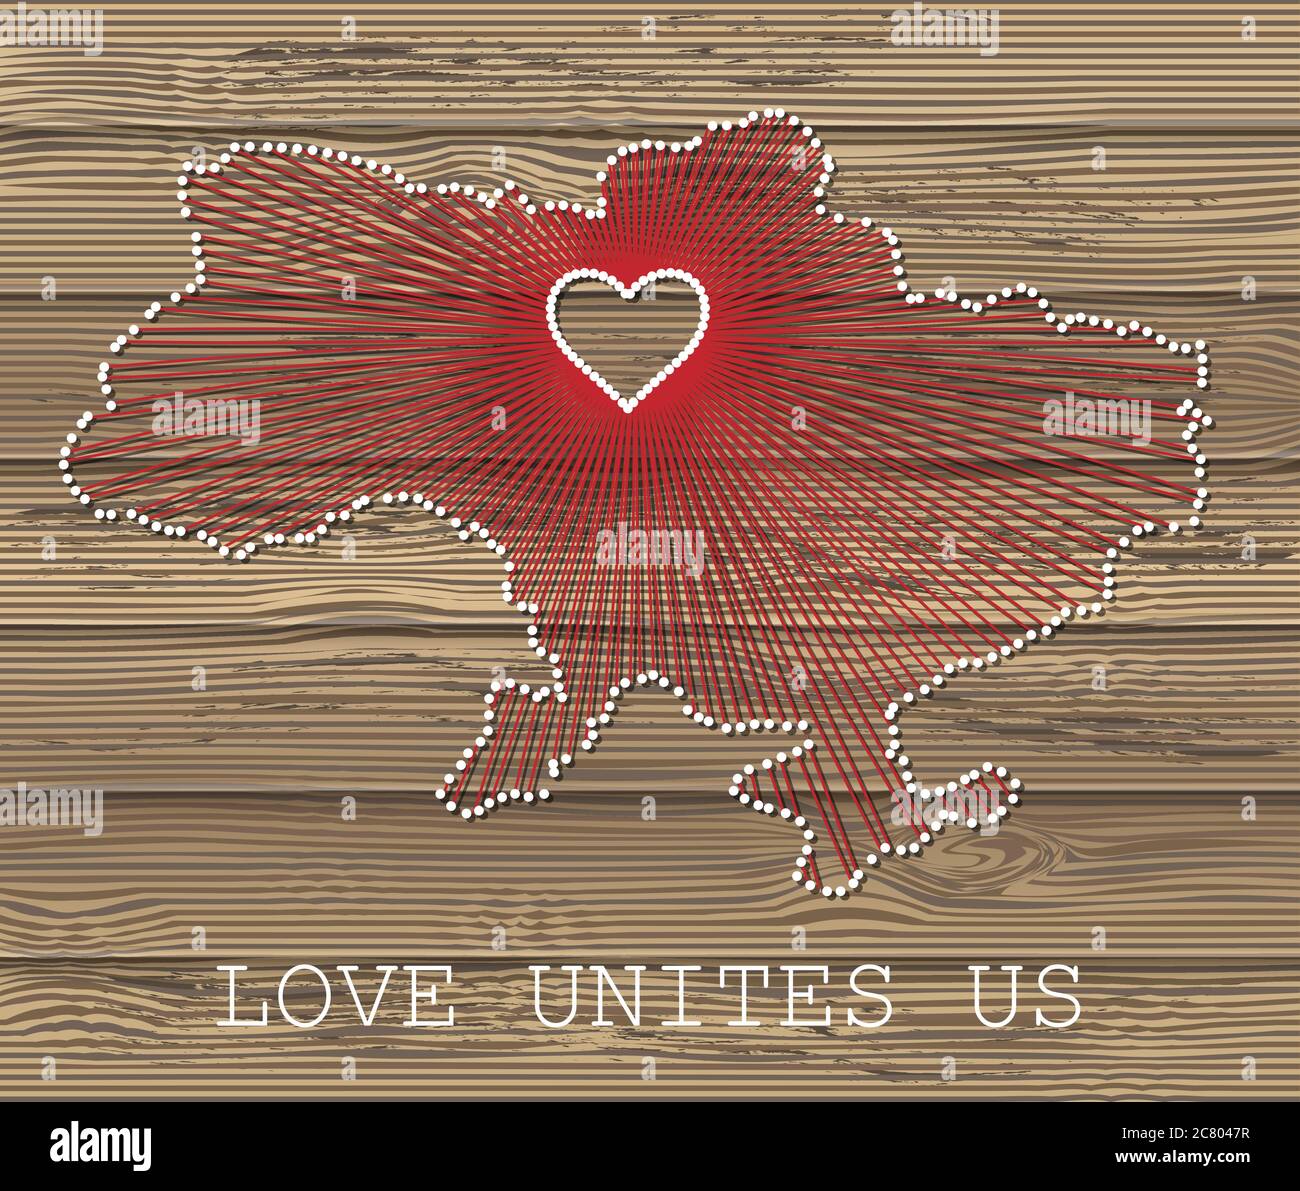 Ukraine Kunst Vektor-Karte mit Herz. Fadenkunst, Garn und Stifte auf Holzplanken Textur. Liebe verbindet uns. Botschaft der Liebe. Ukraine Kunstkarte Stock Vektor